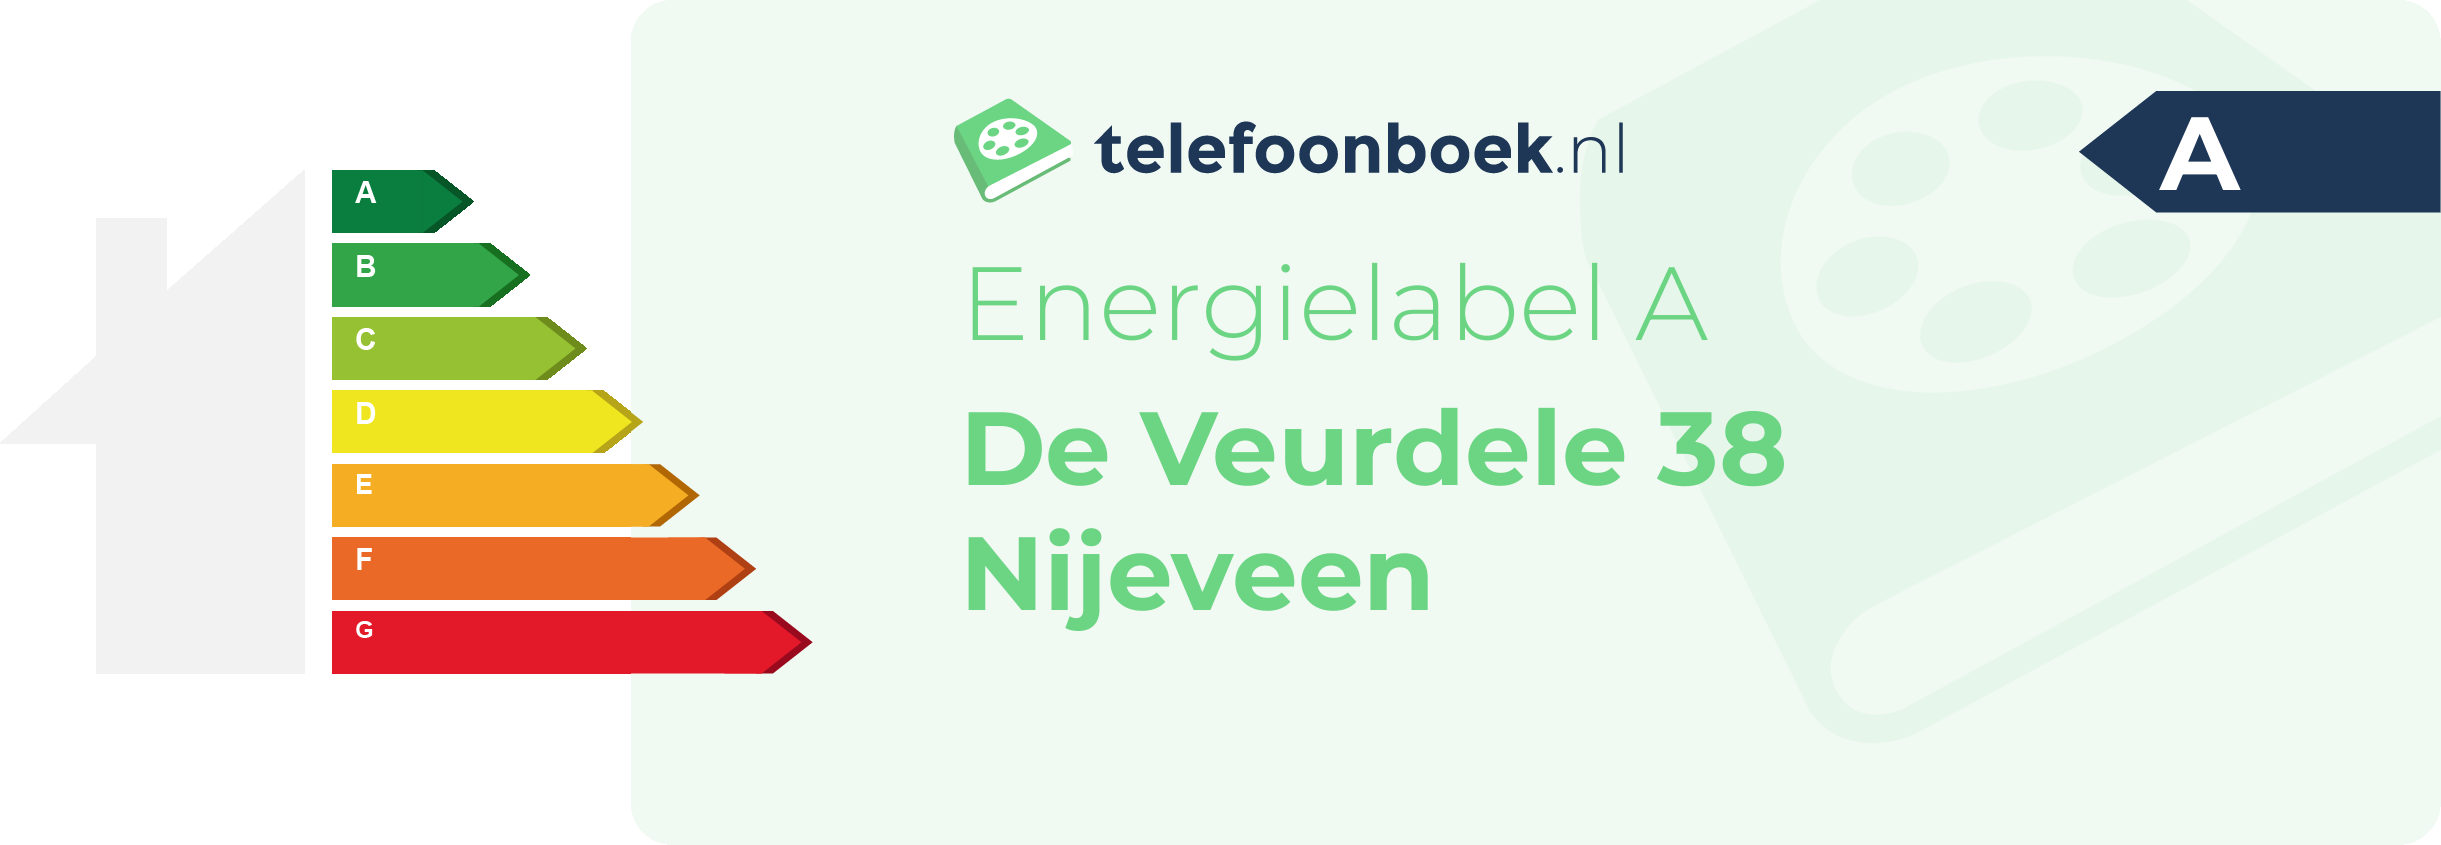 Energielabel De Veurdele 38 Nijeveen